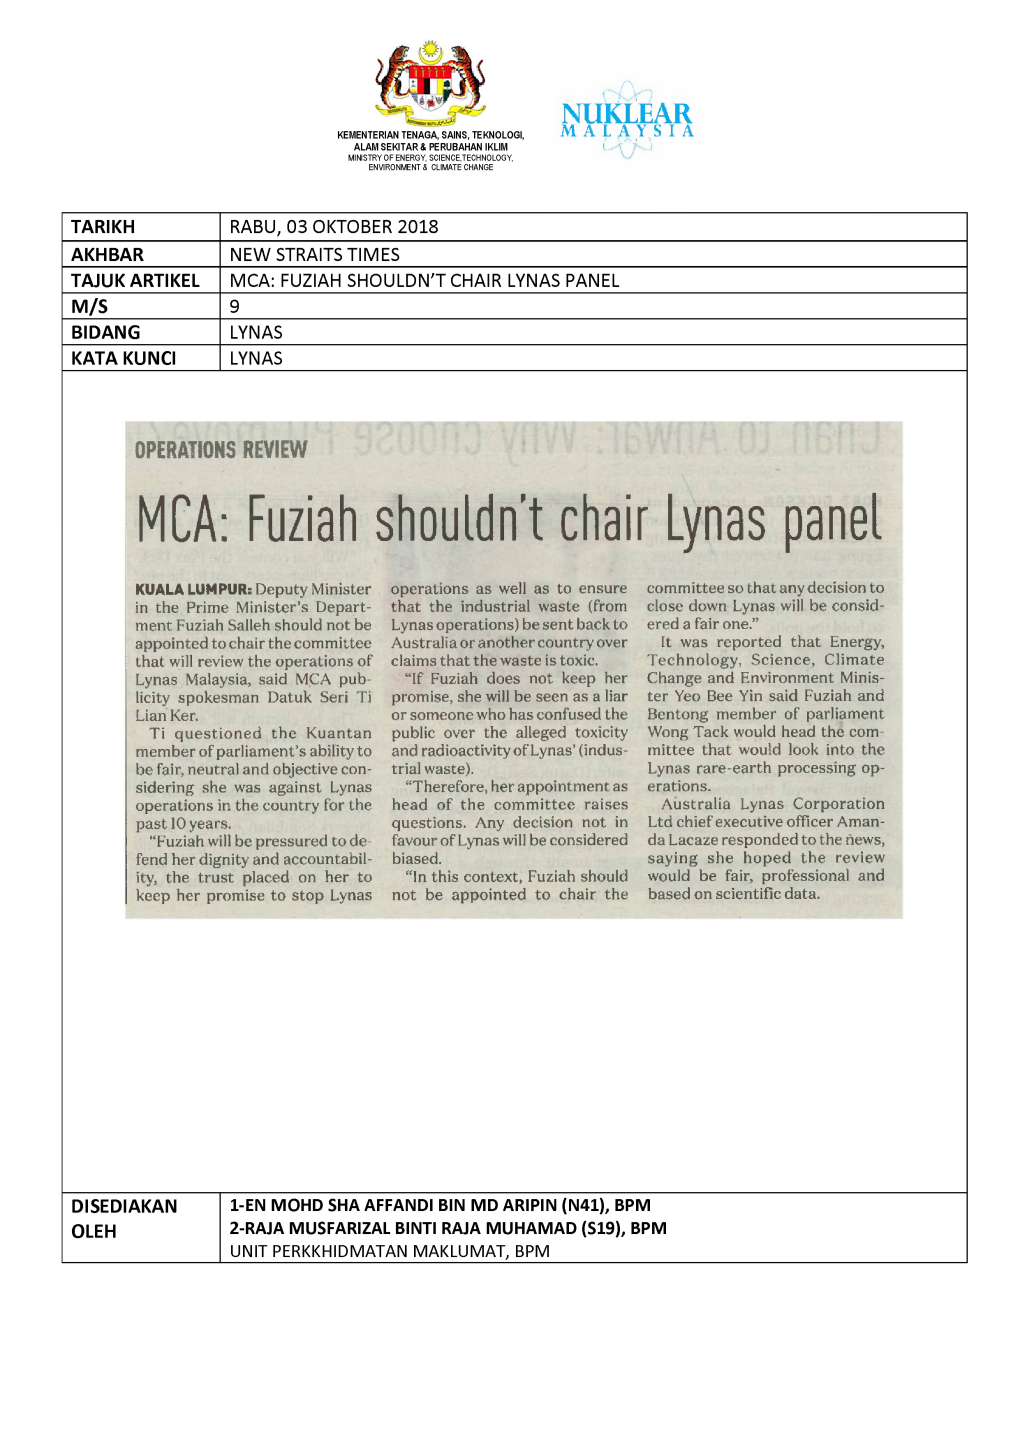 Mca: Fuziah Shouldn't Chair Lynas Panel M/S 9 Bidang Lynas Kata Kunci Lynas